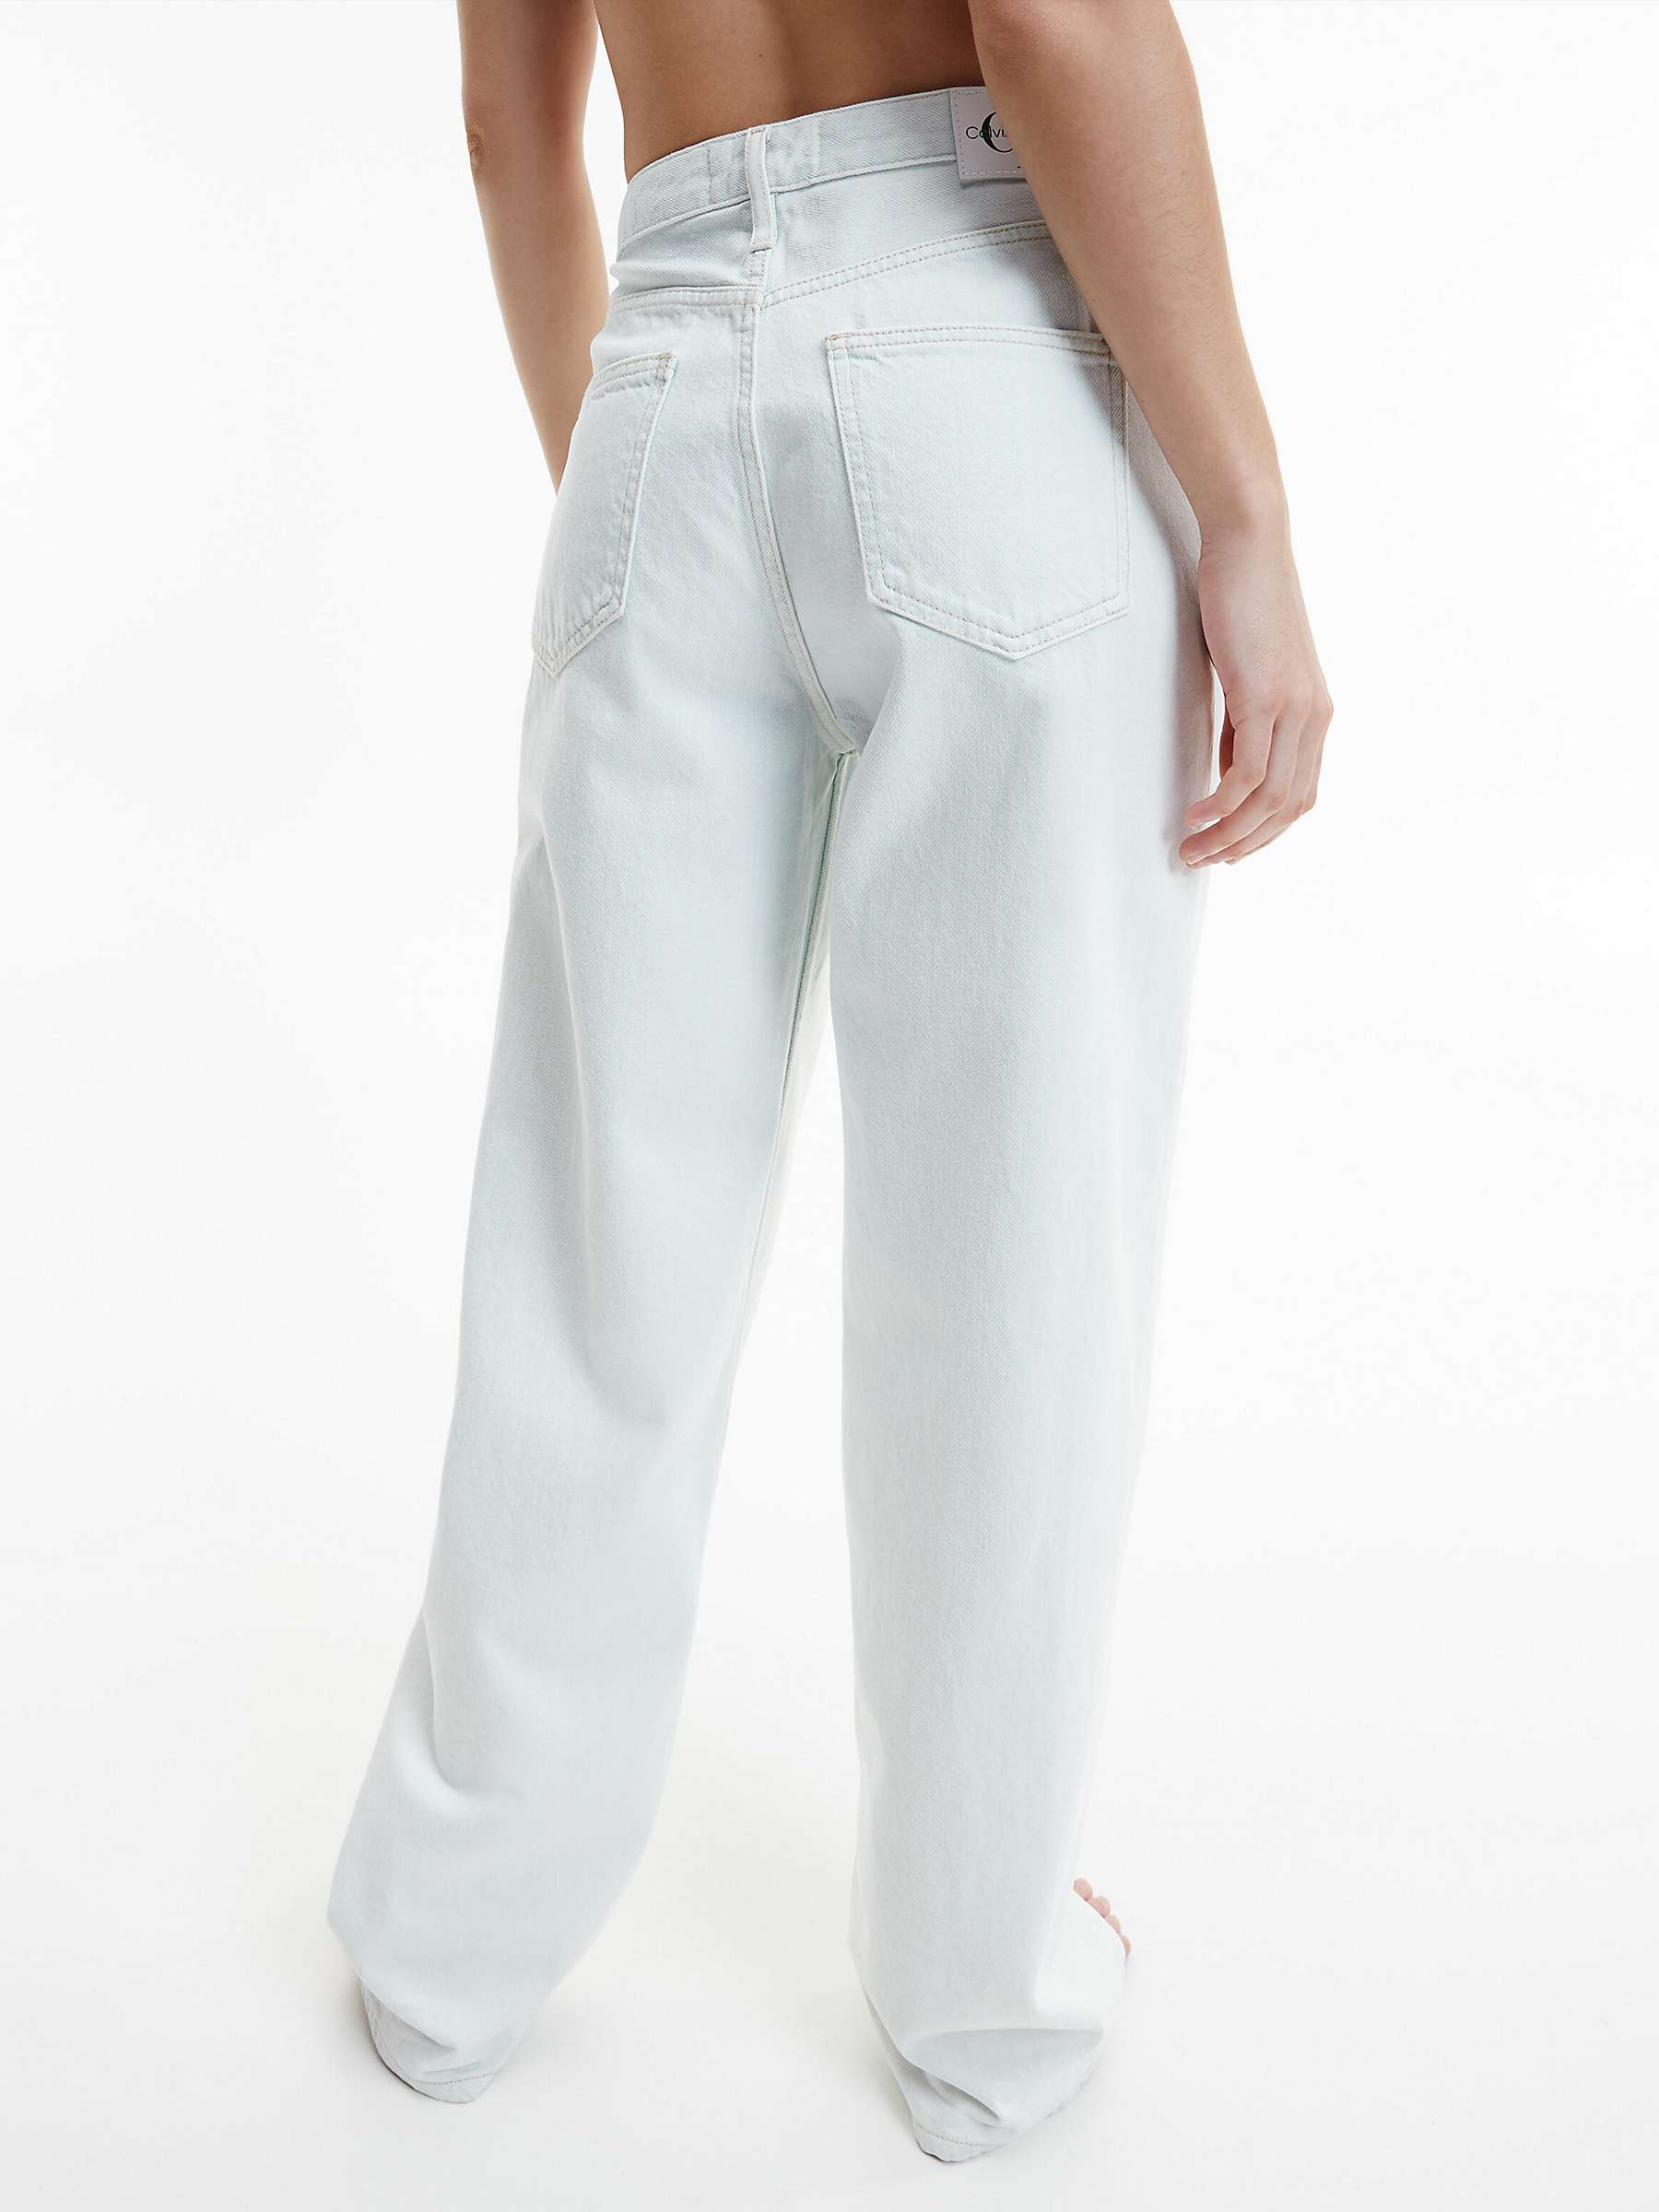 Buy Calvin Klein 90s Straight Leg Jeans, Denim Light Online at johnlewis.com